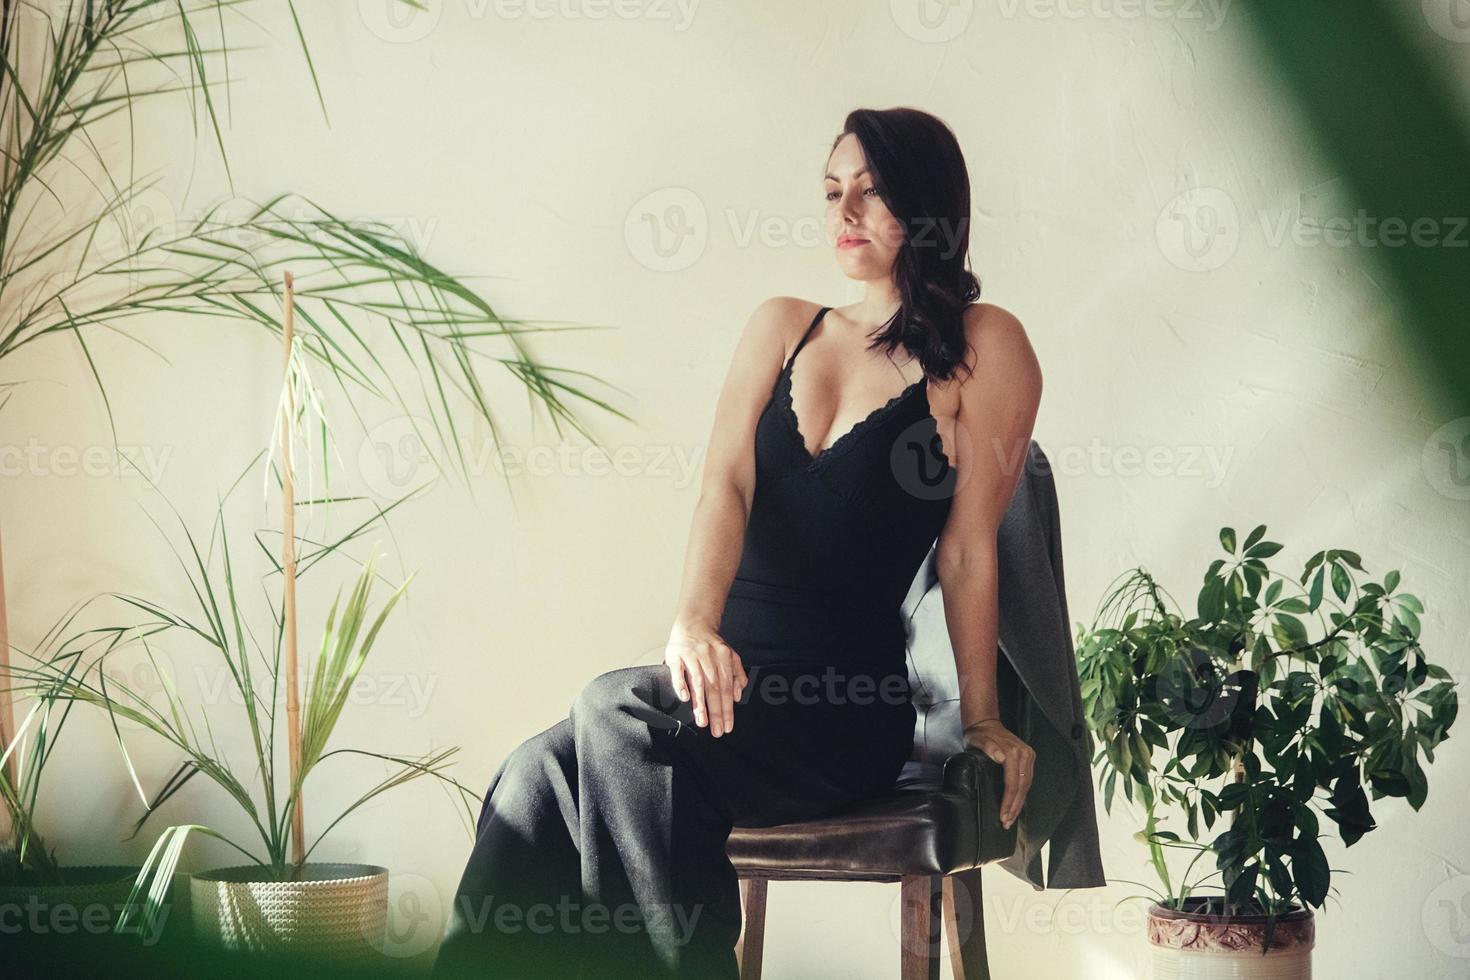 vrouw gekleed in zwarte kleding zit op een stoel in loft-stijl interieur foto